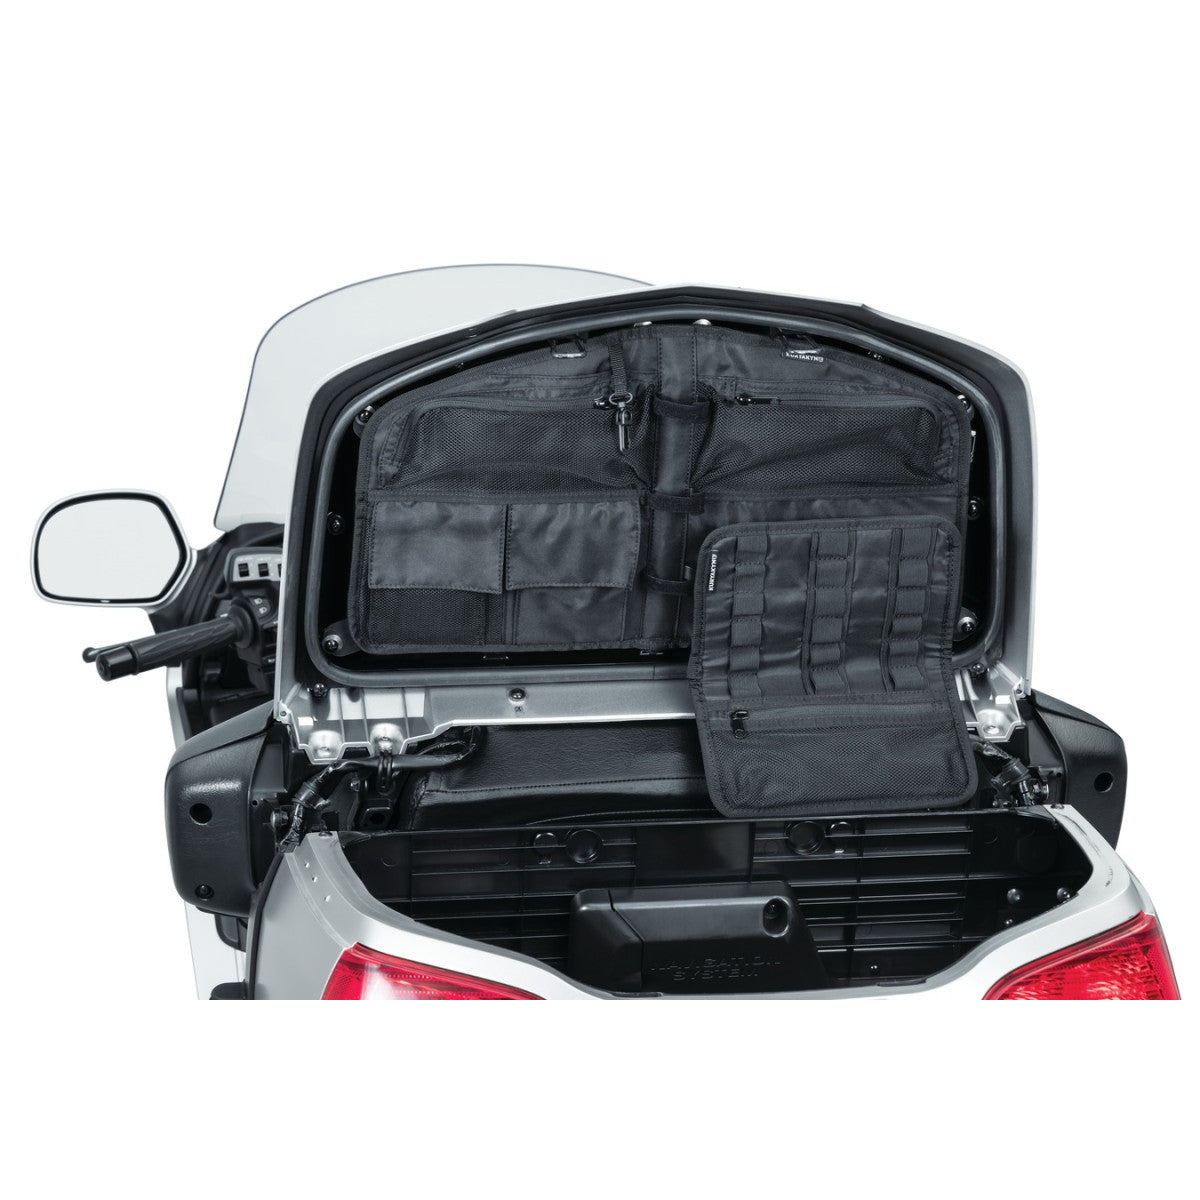 Kofferraumdeckel Organizer Tasche für Honda Gl1800 Gold Wing Modelle (außer F6B) 01-17